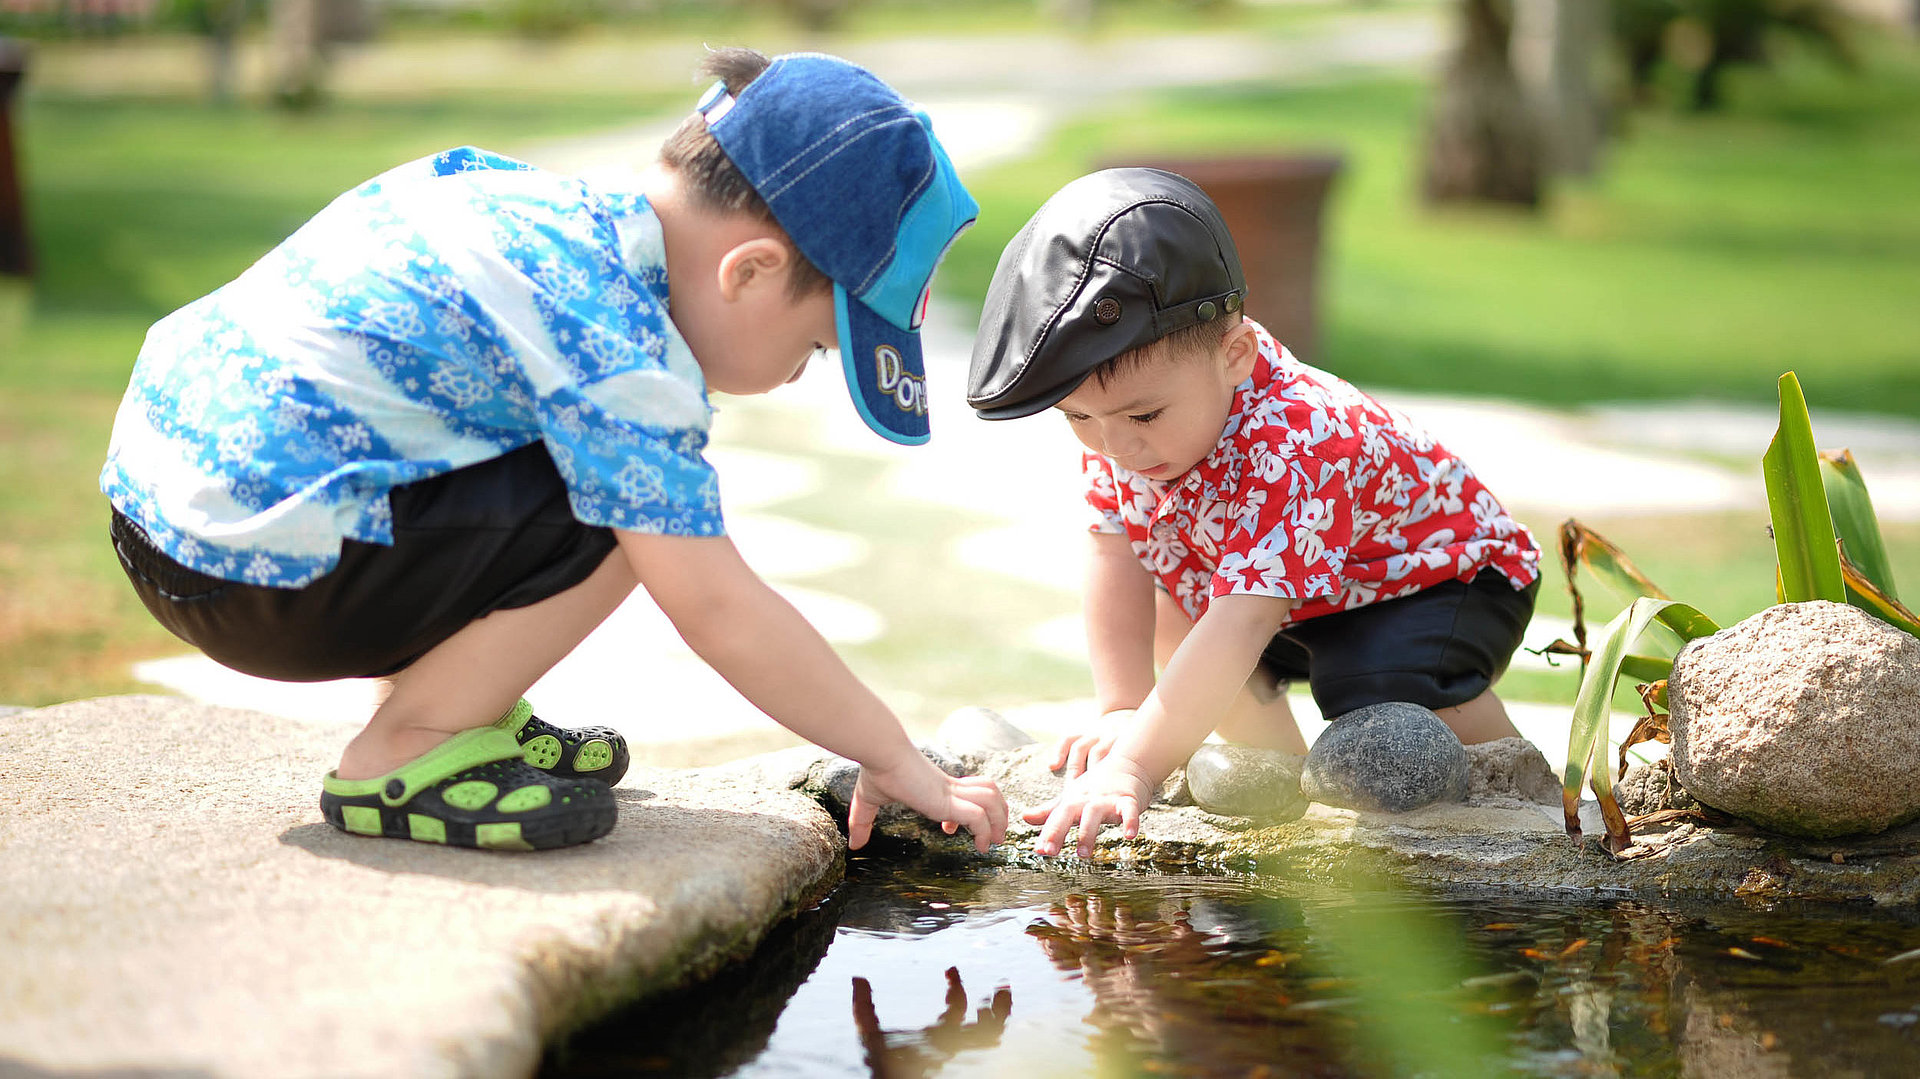 Kinderfreundliche Gastronomie in Unterfranken - zwei kleine Jungs spielen zusammen am Teich